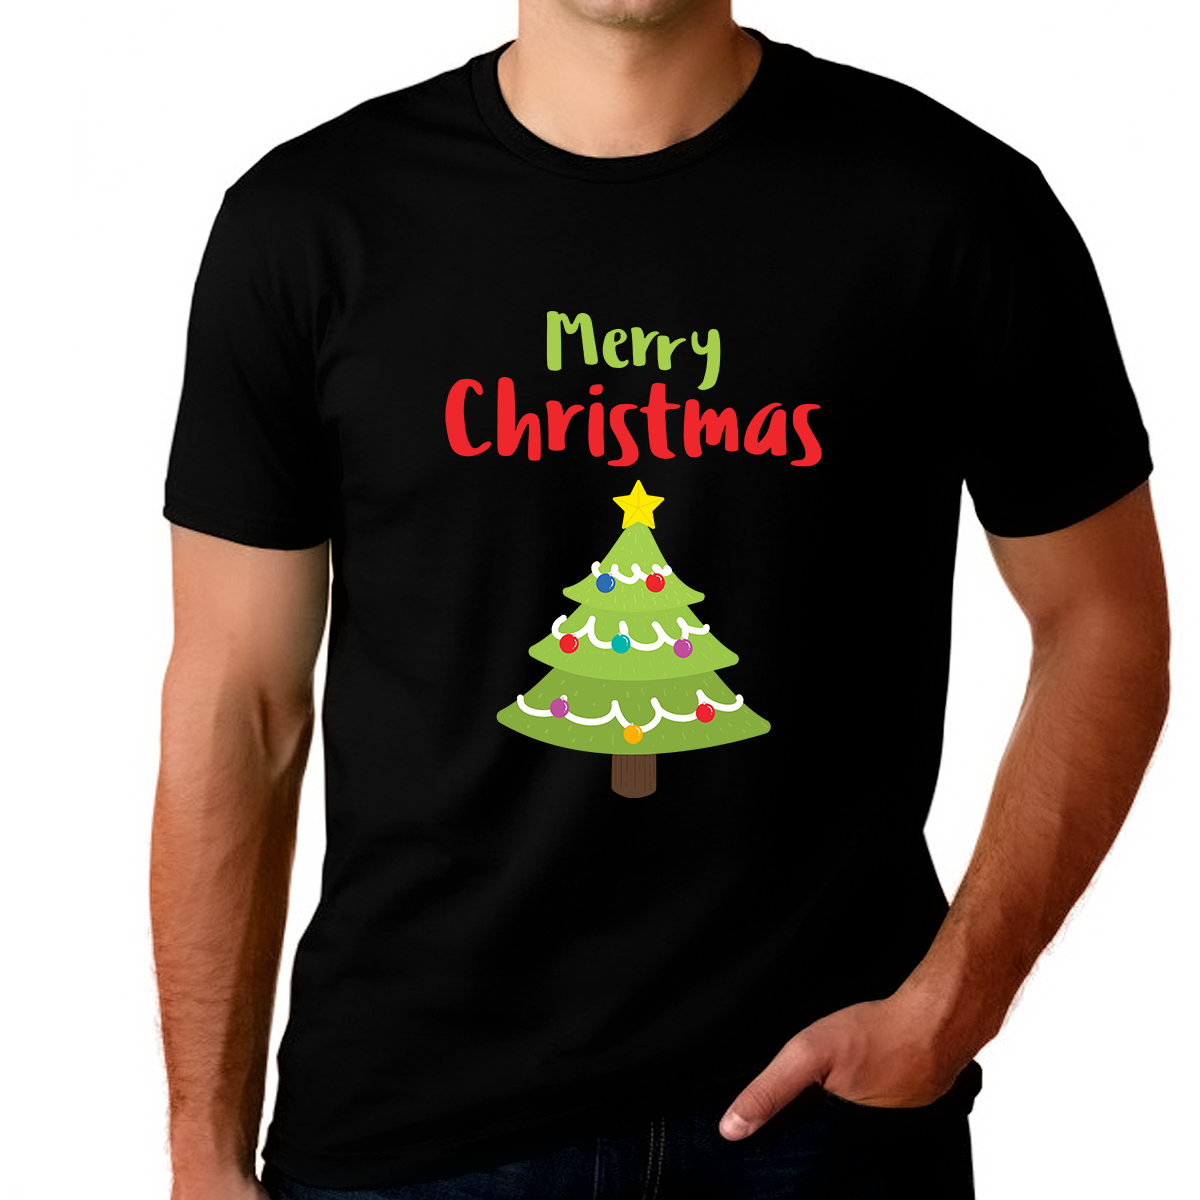 Christmas Tree Big and Tall Christmas Shirts for Men Plus Size Funny Christmas Shirt Mens Christmas Shirt